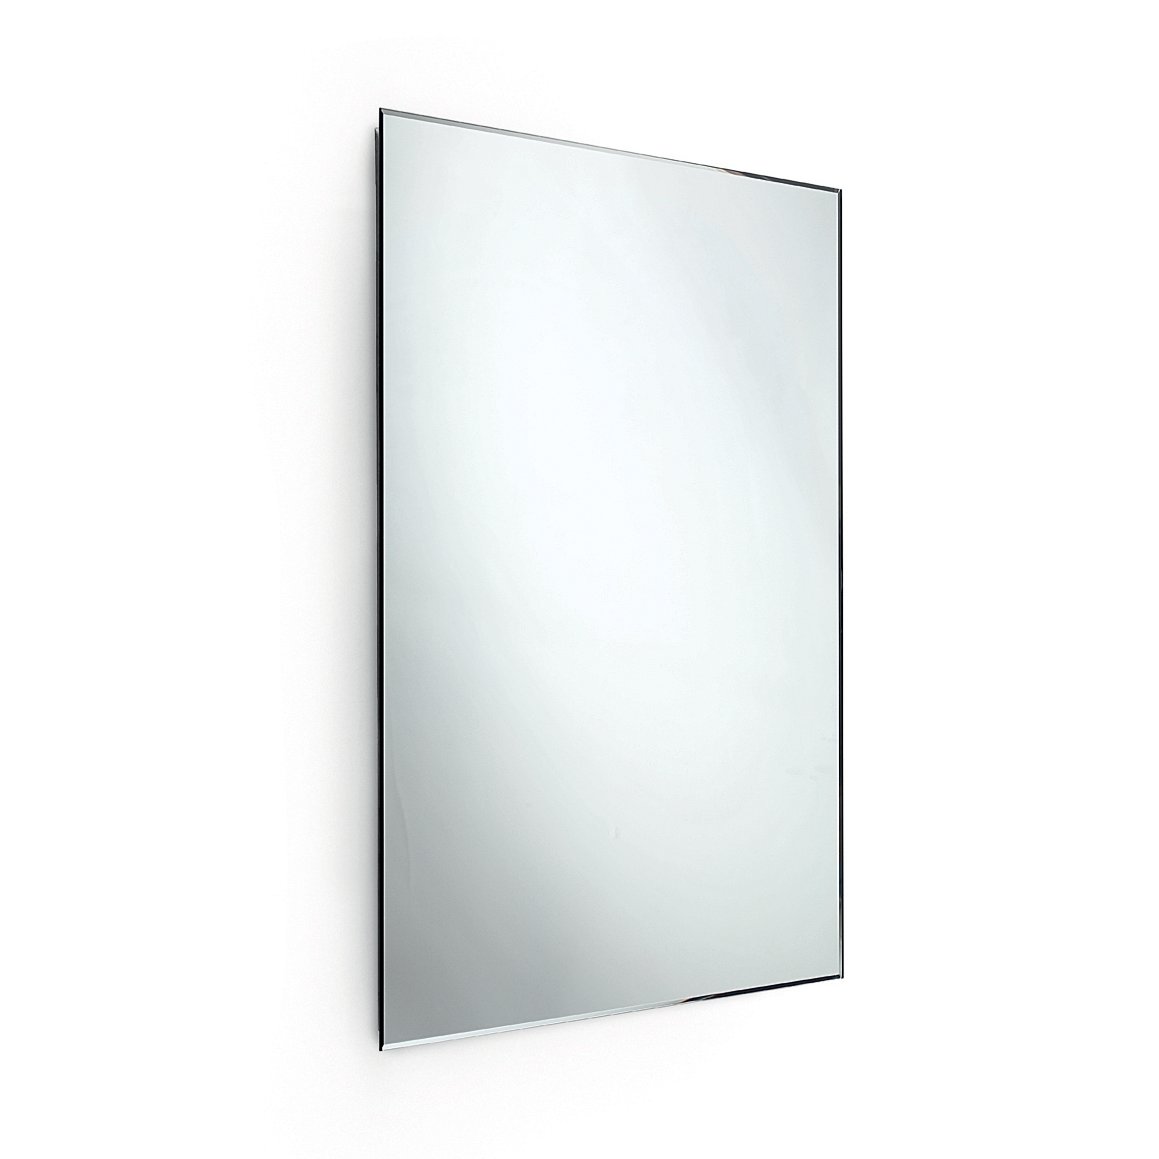 Lineabeta Specchio molato reversibile SPECI 64 x 120